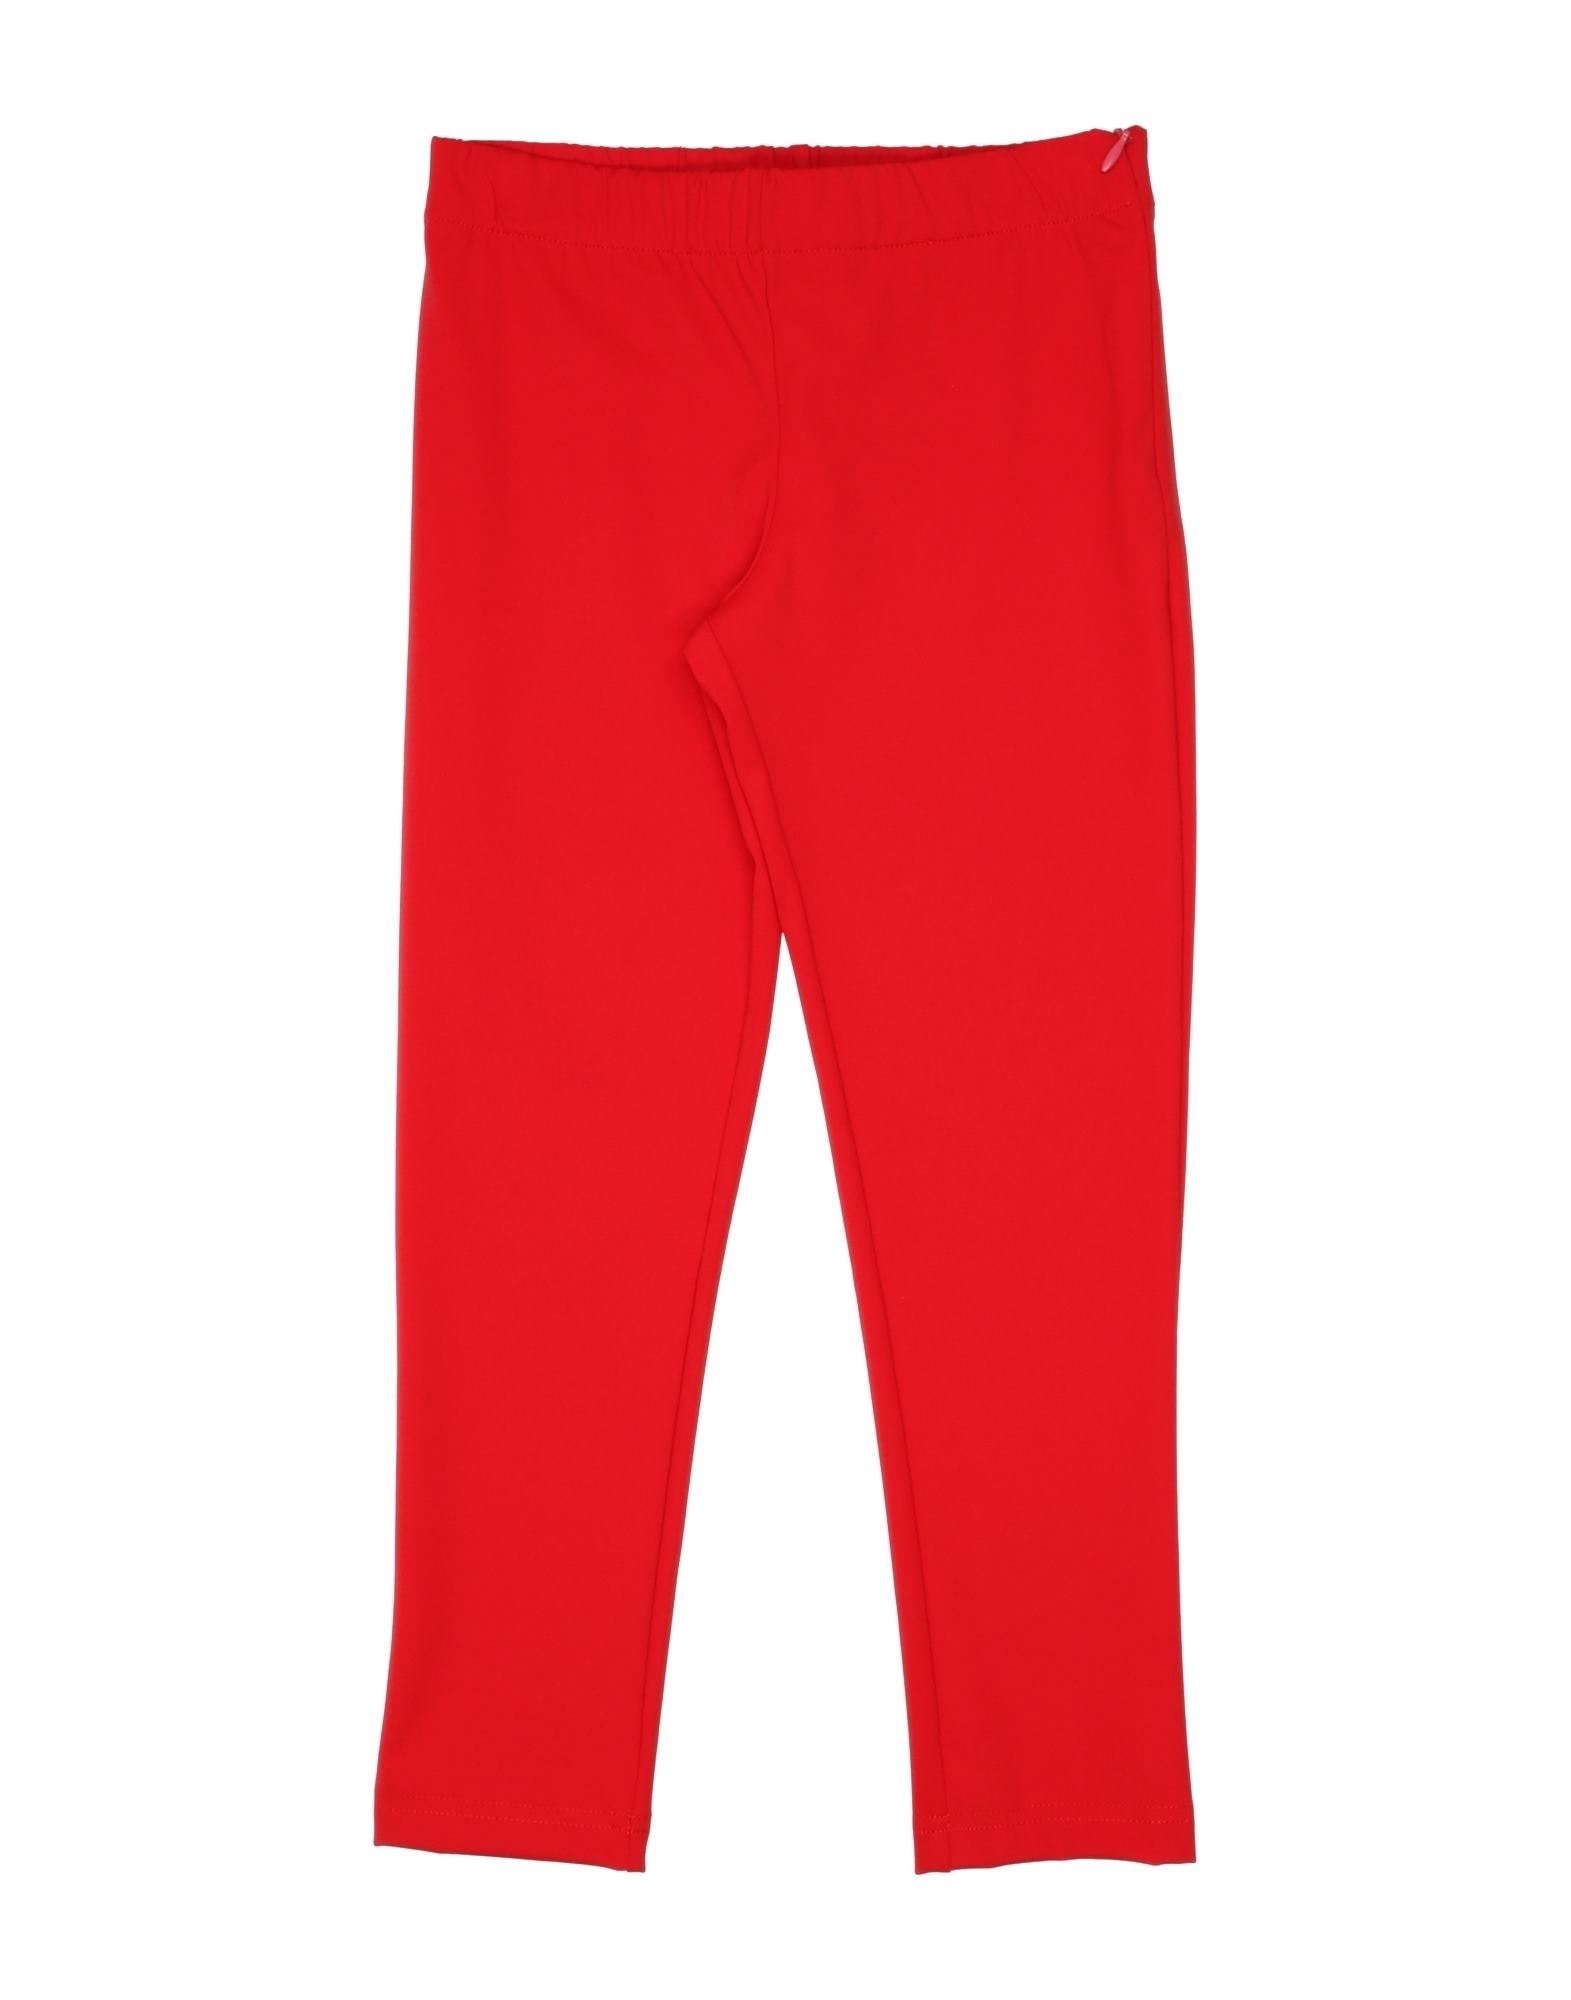 Dolce & Gabbana Kids' Leggings In Red